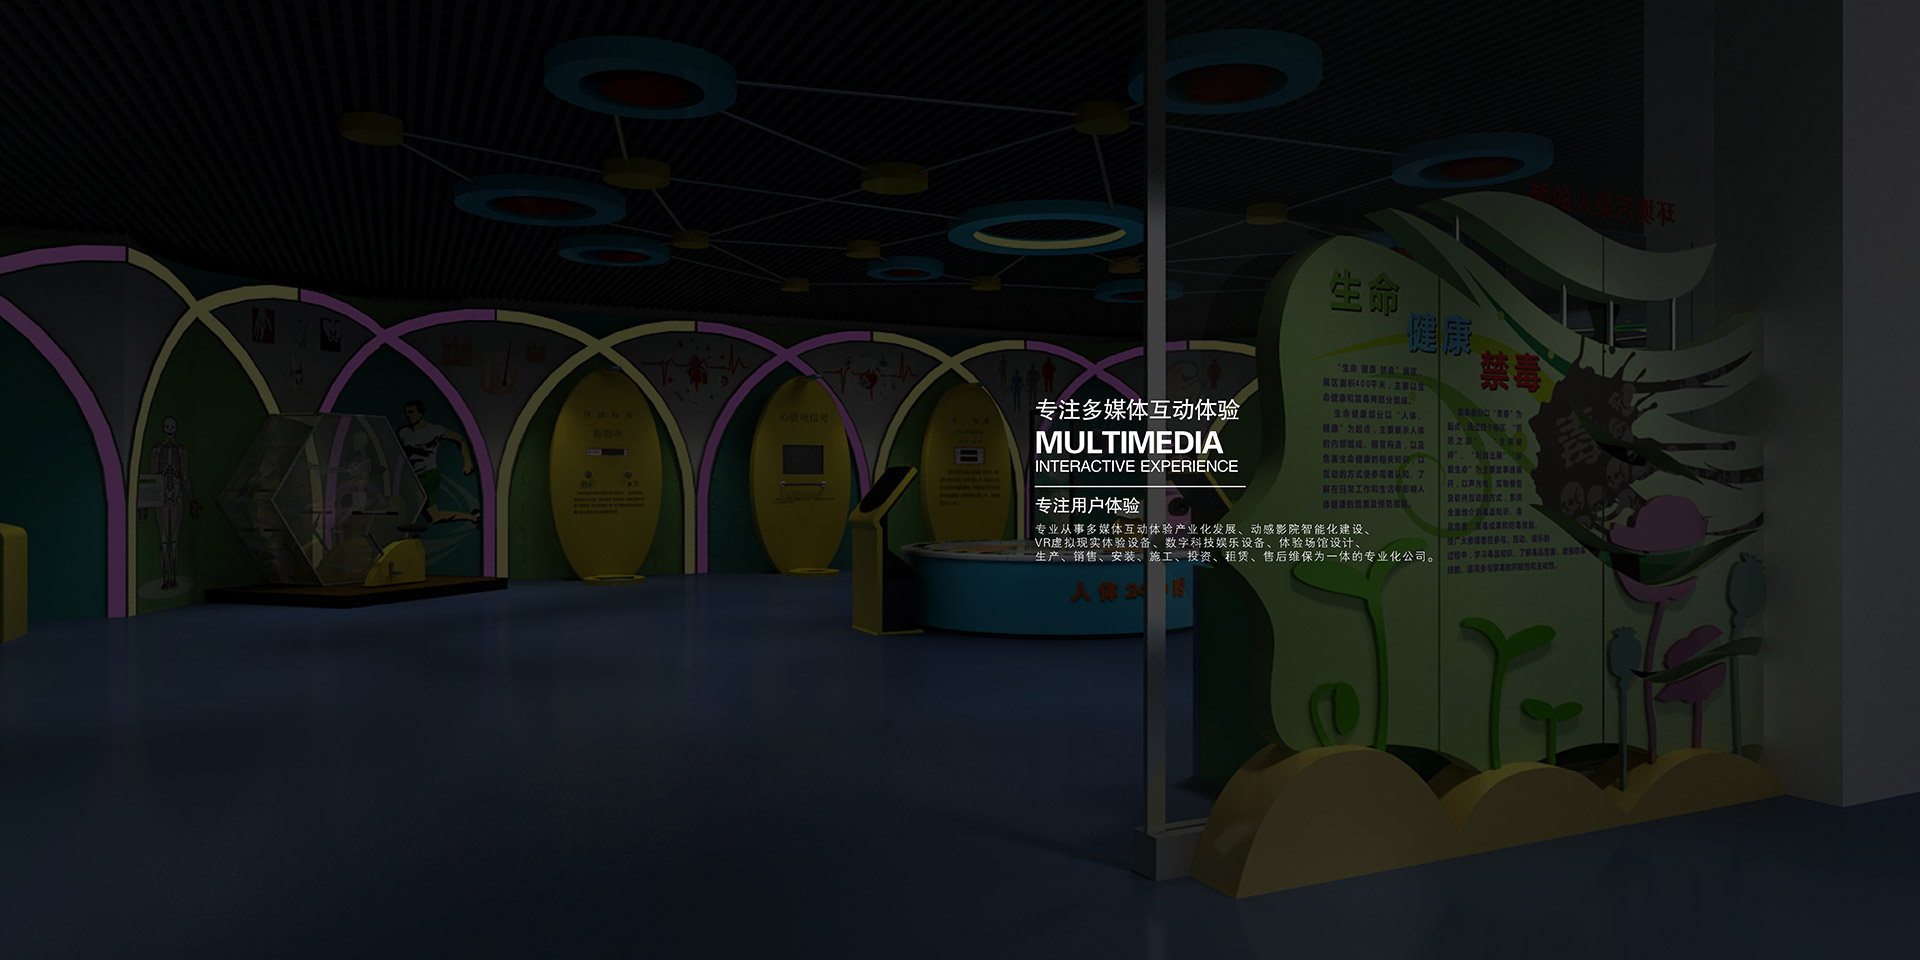 梨树虚拟篮球体验,梨树XD超强虚拟现实,梨树大型互动墙,梨树虚实结合3D造景,梨树电影院类4D动感座椅,